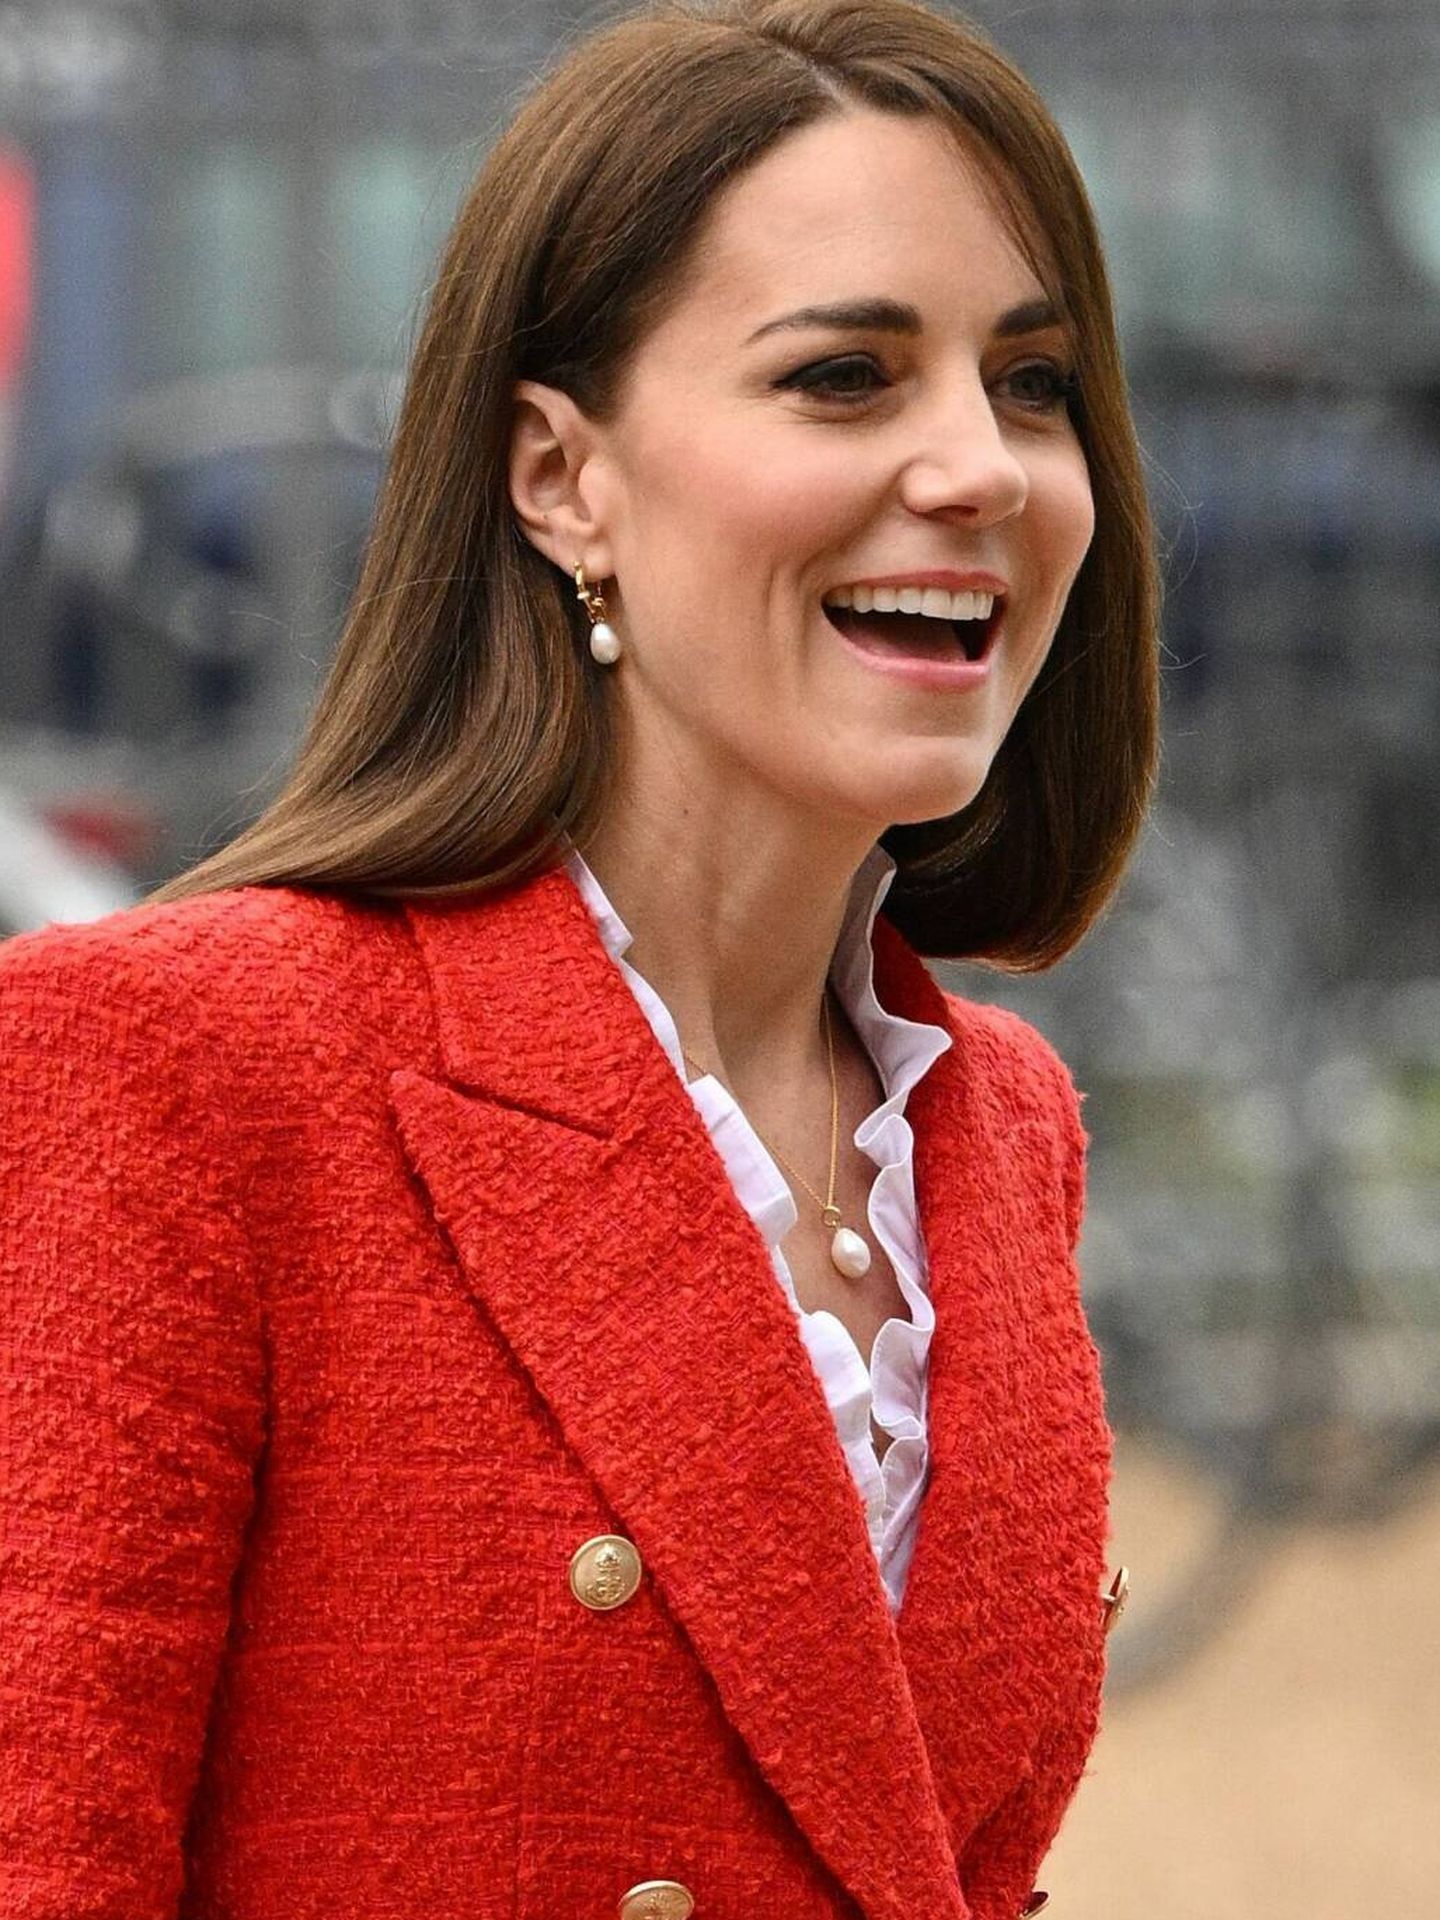 Detalle de los nuevos pendientes y collar de Kate Middleton. (Getty/Samir Hussein)